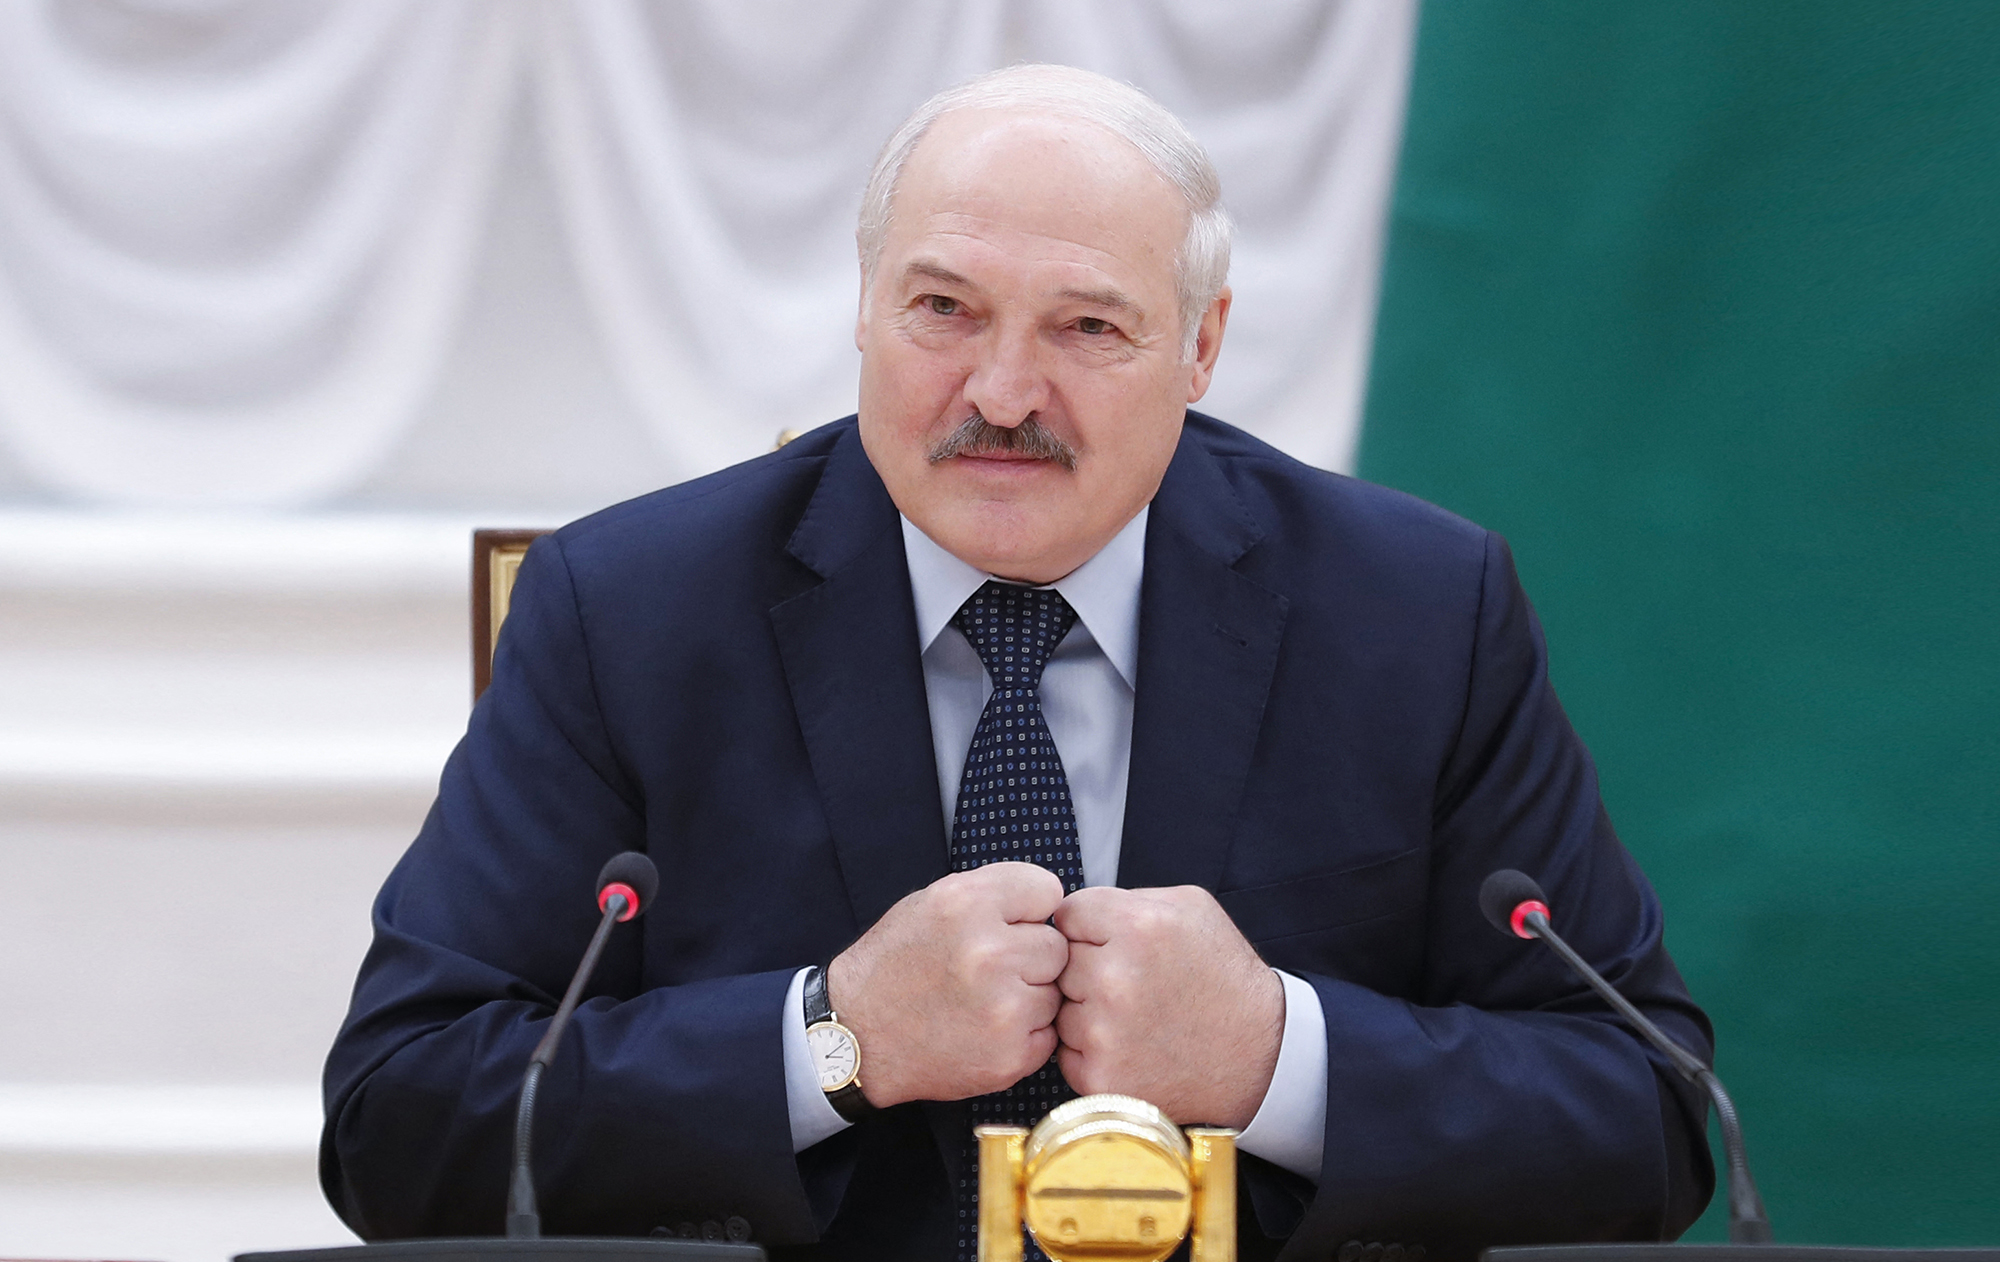 Диктатор захворів? Що відбувається з Лукашенком та чому він зник на кілька днів